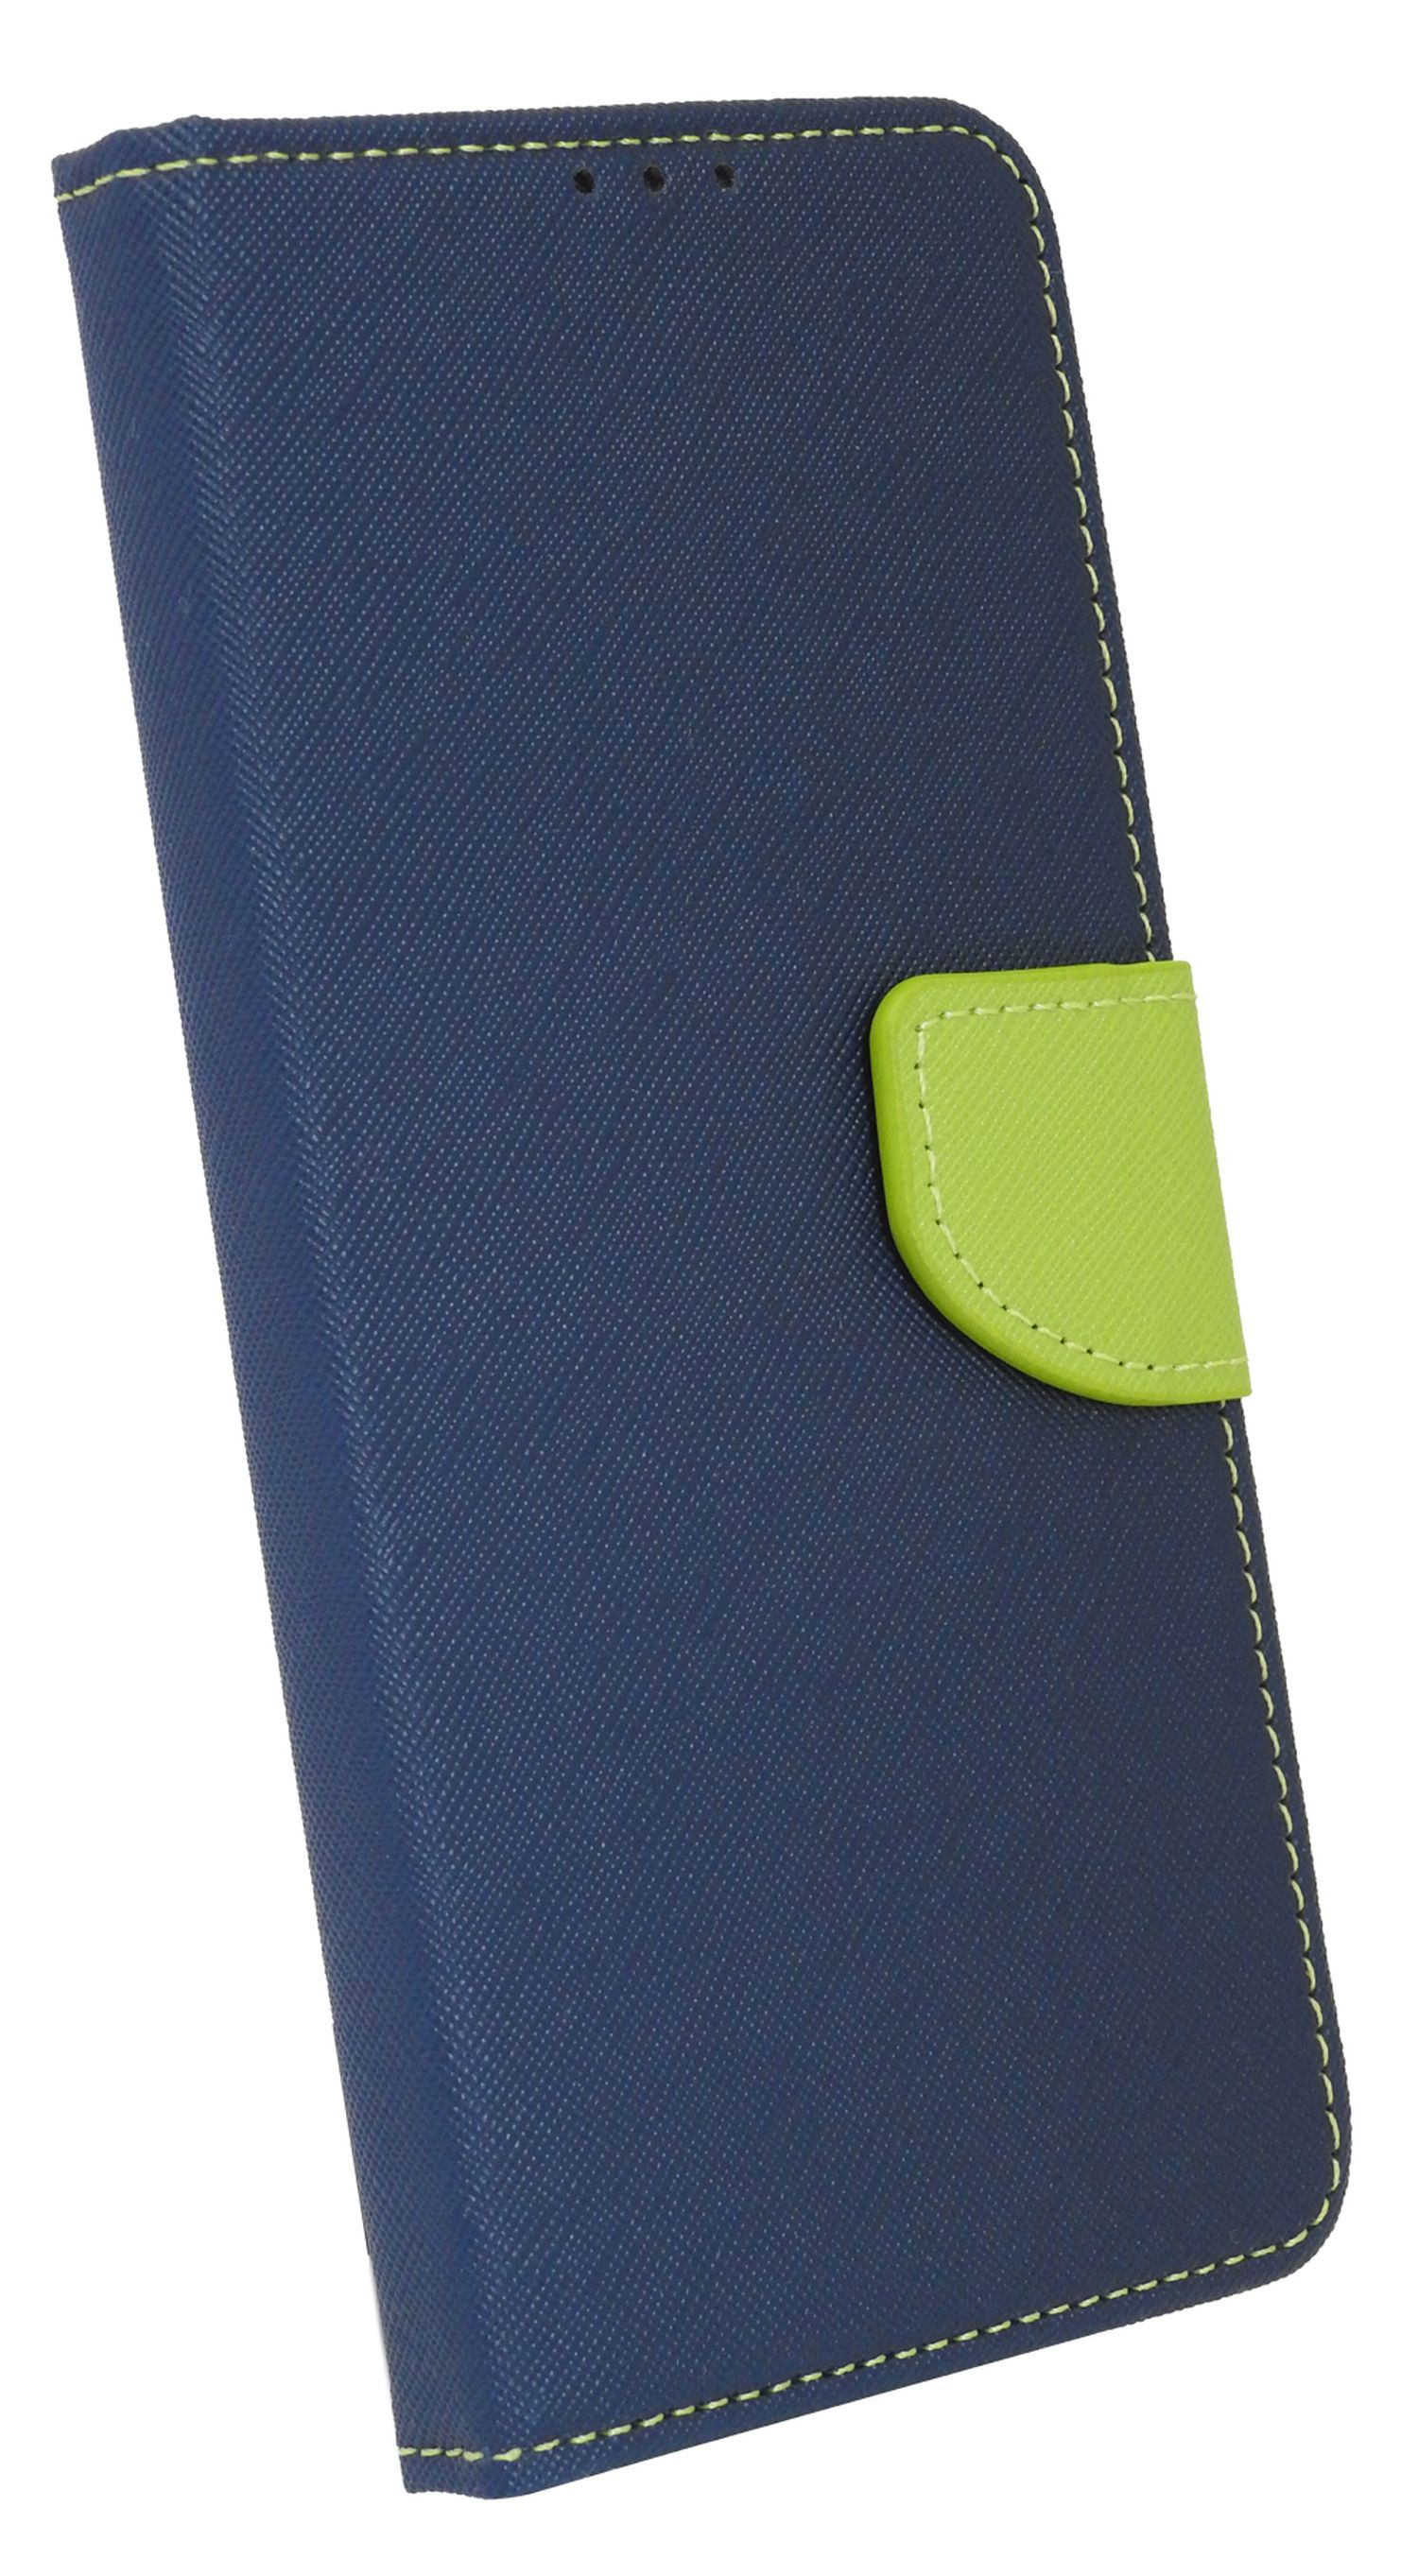 Redmi Bookcover, COFI 12s, Note Blau-Grün Xiaomi, Tasche, Buch